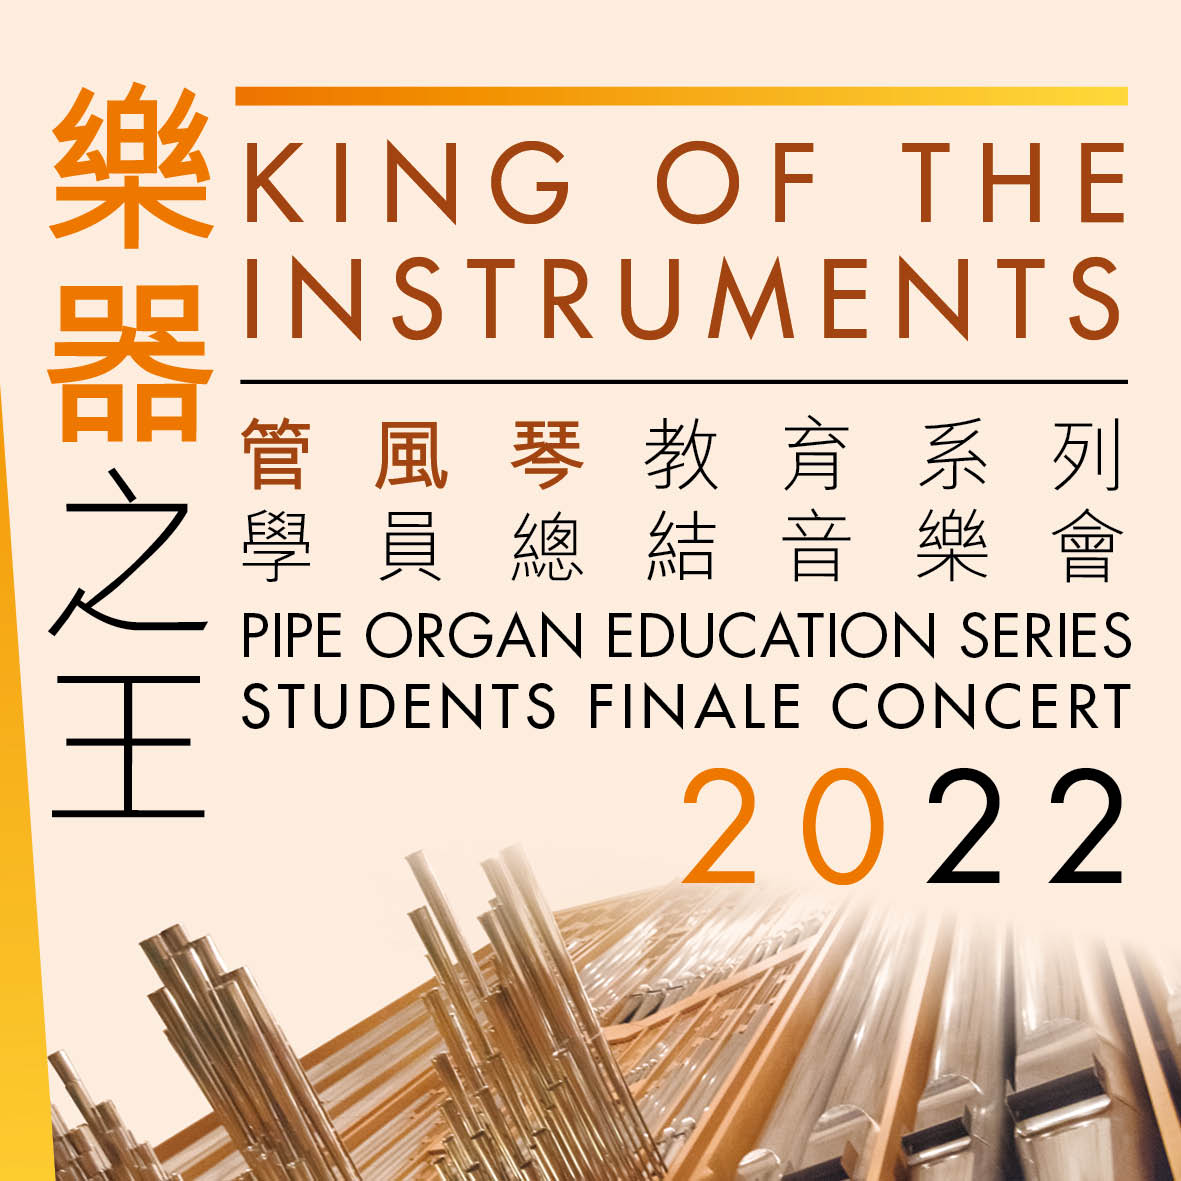 香港文化中心「樂器之王」管風琴教育系列2022學員總結音